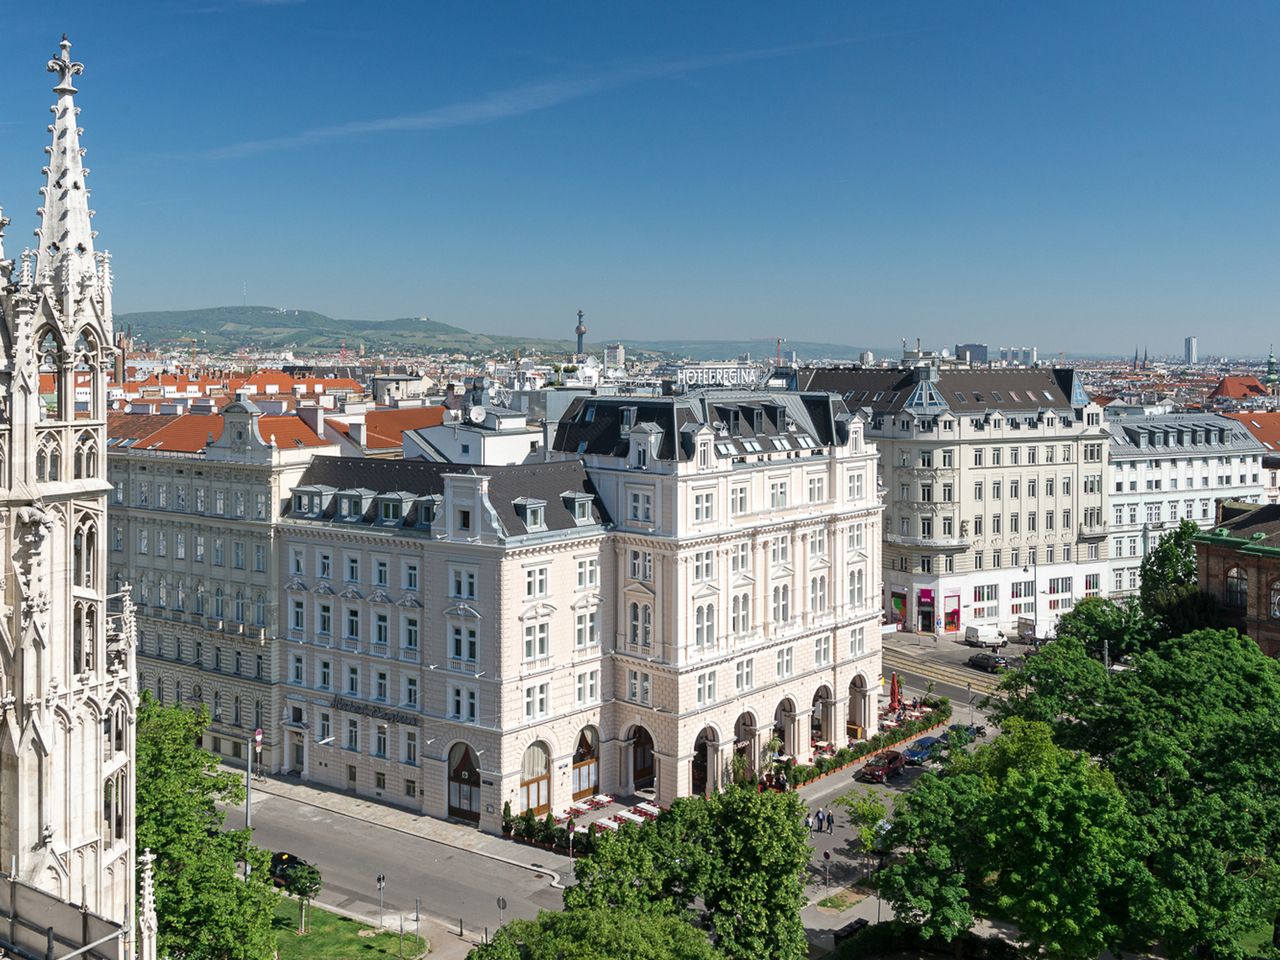 Das wunderschöne Wien erleben - 5 Tage